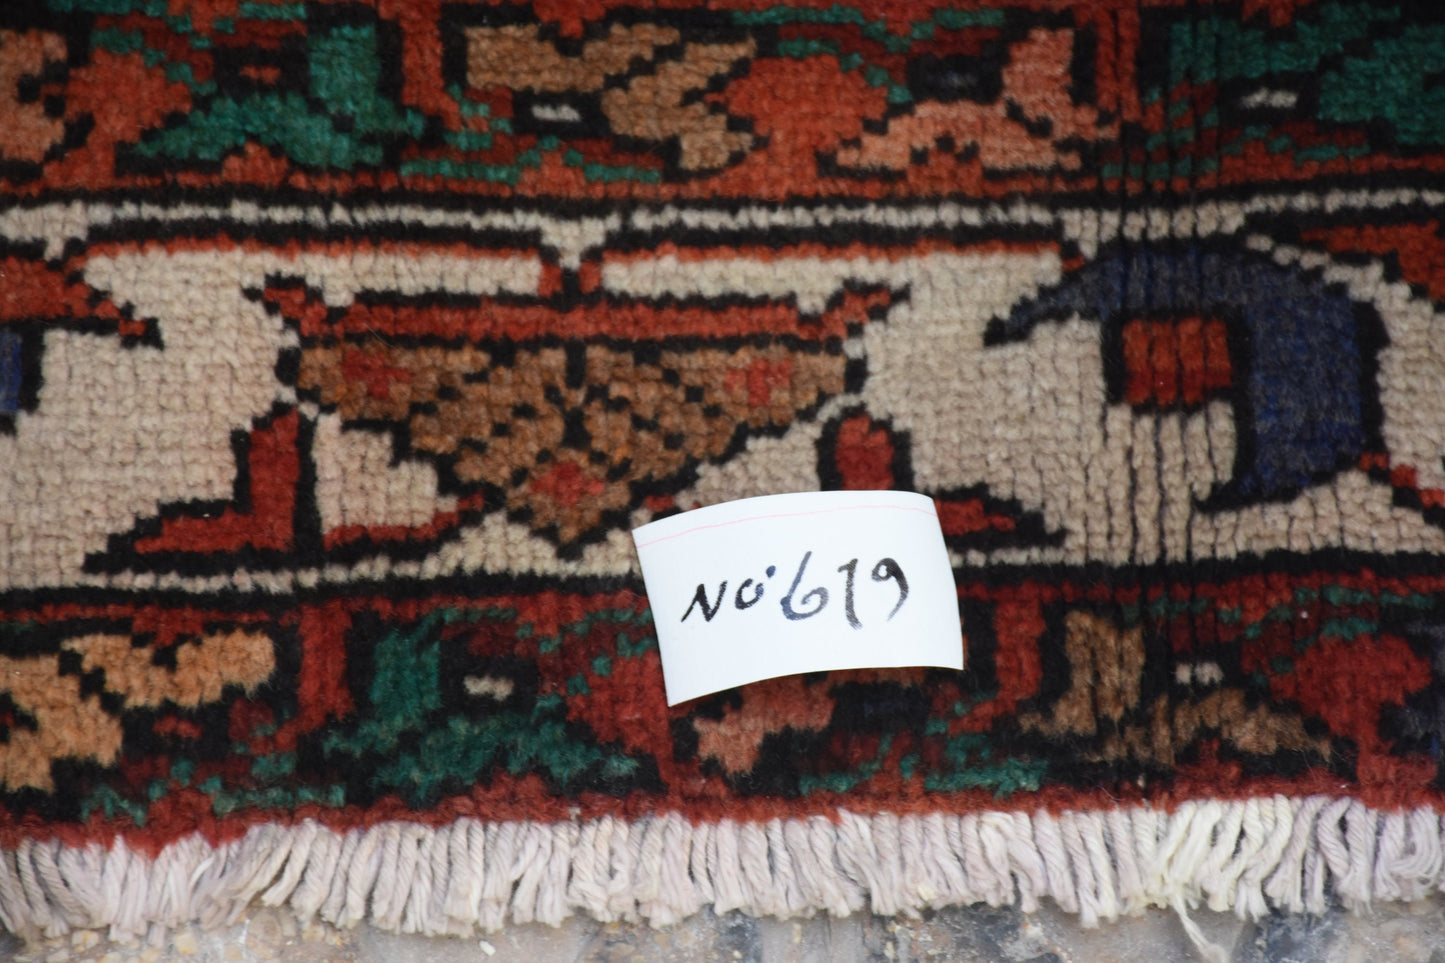 Red 4x7 Vintage Rug | Tribal Oriental Persian Rug | Kazak Bohemian Rug | Handmade Rug